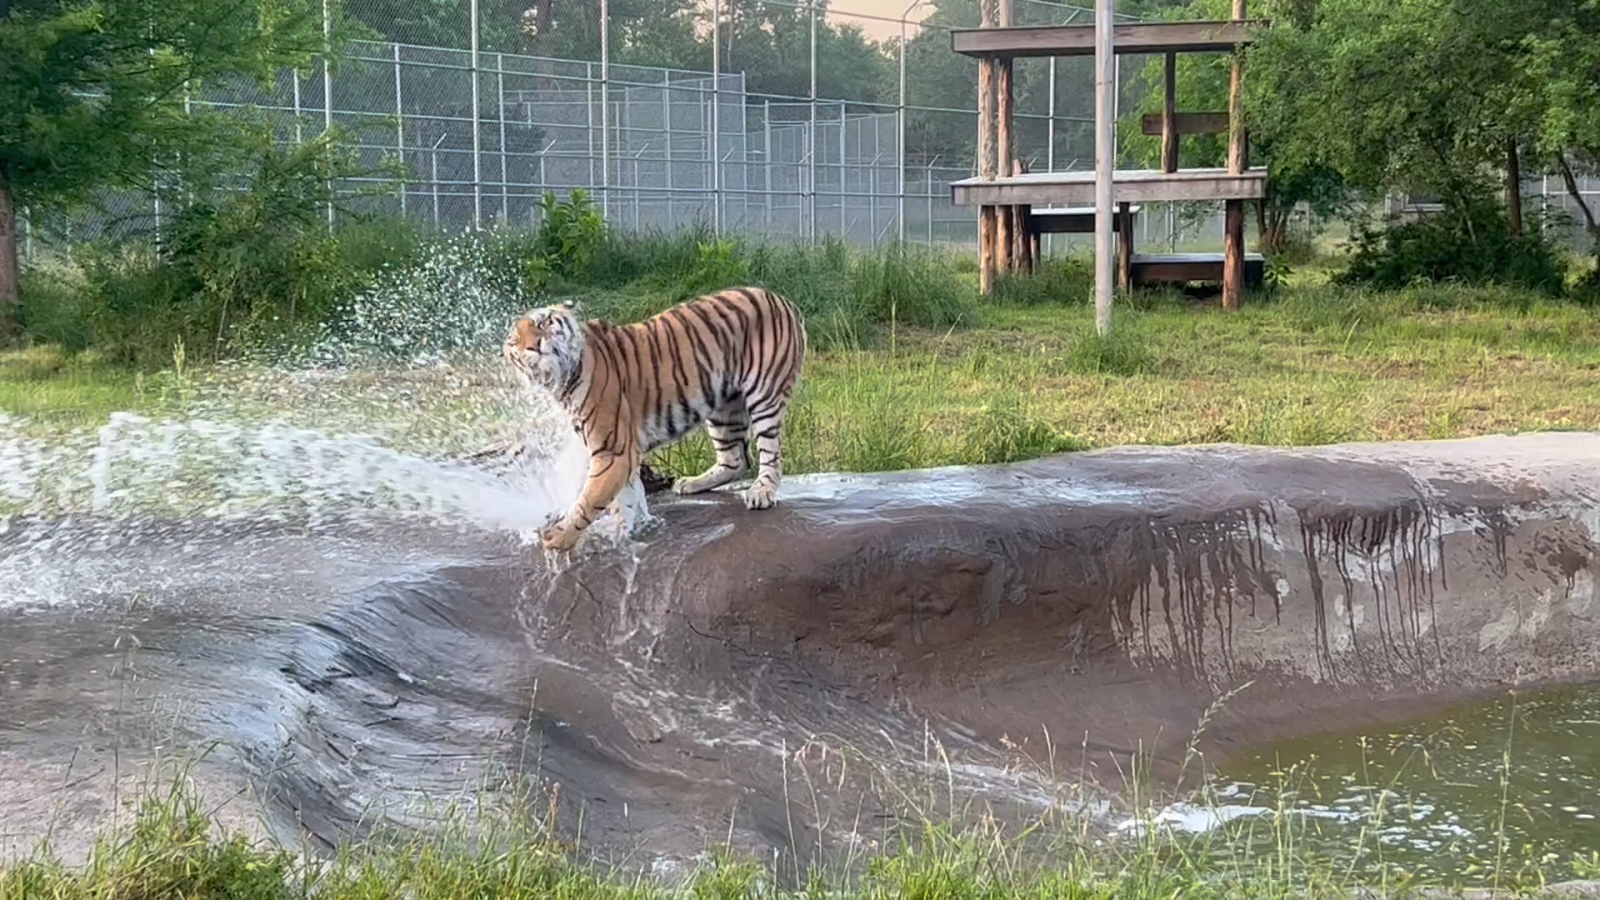 Tiger splashing in a spout